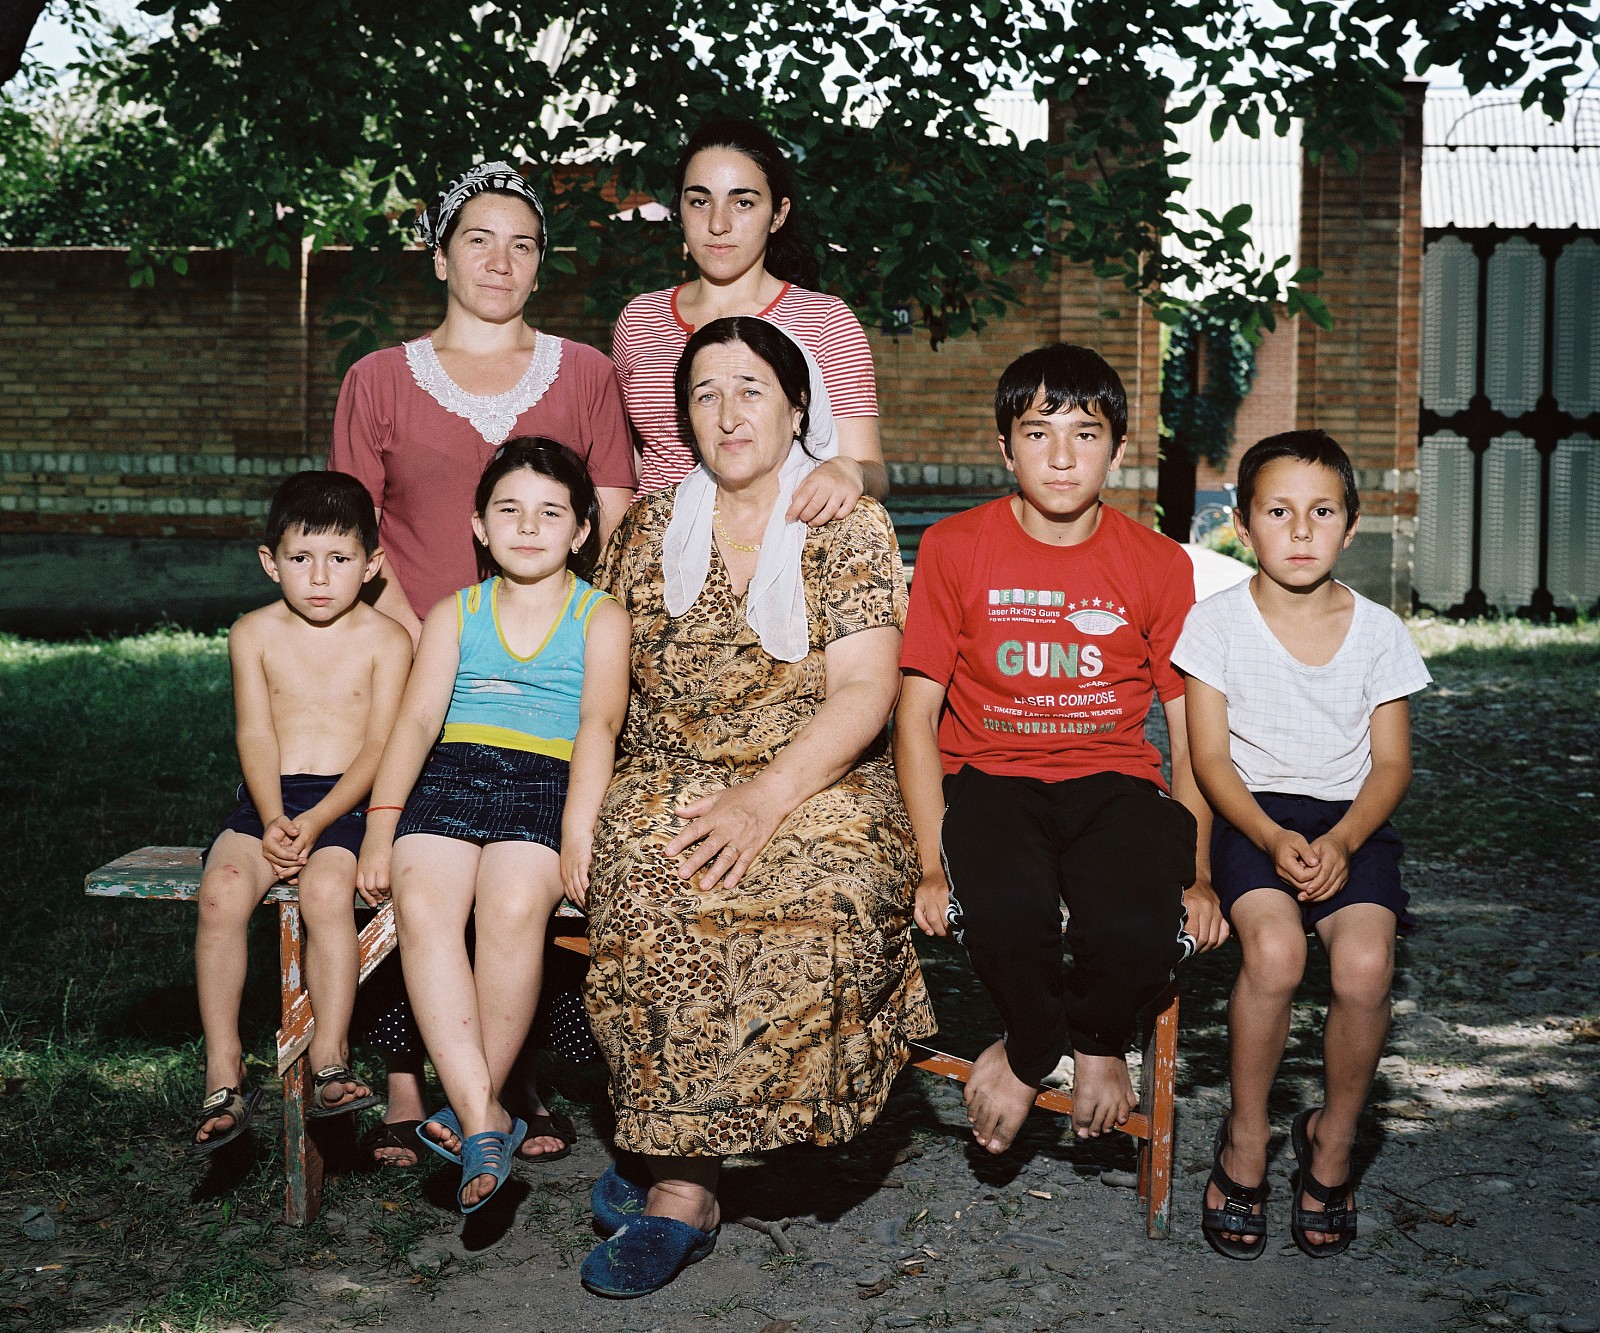 De ouders van Khava Gaisanova (midden voor) uit Tsjermen werden in 1944 gedeporteerd naar de omgeving van Astana in Kazachstan. Khava werd daar in 1955 geboren. In tegenstelling tot haar ouders keerde ze rond haar achttiende terug naar Tsjermen.